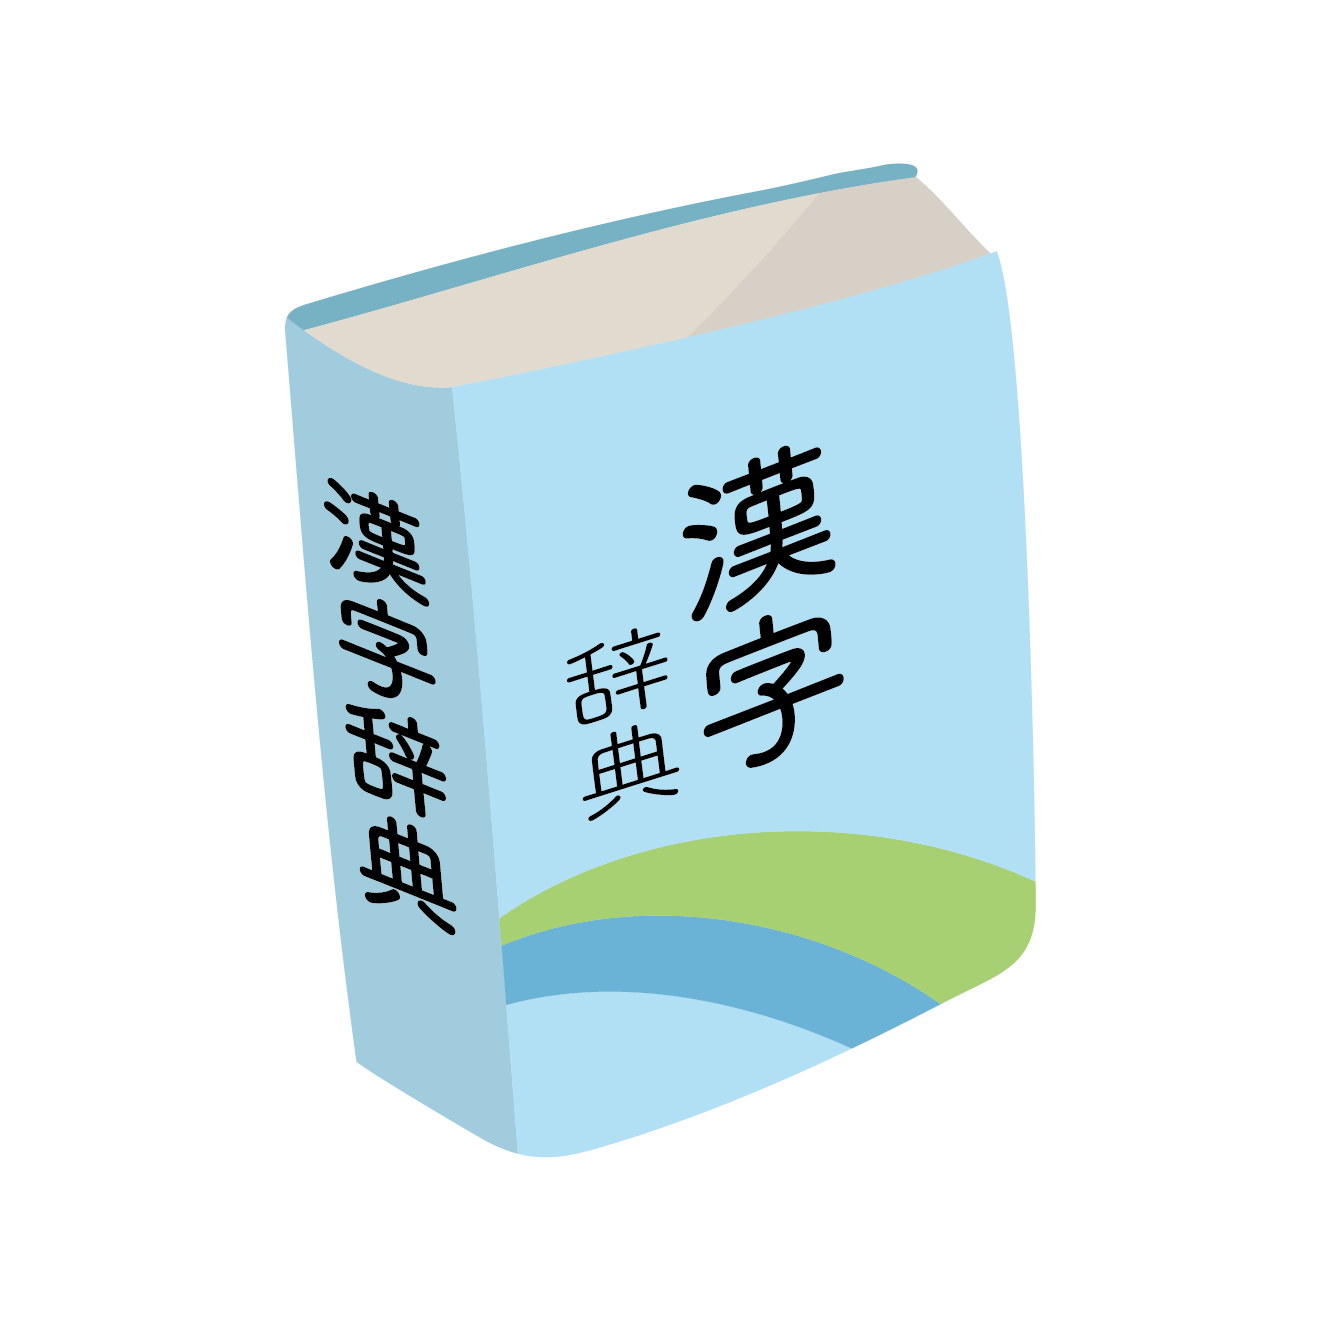 勉強しよう 漢字辞典 辞書 の 無料 フリー イラスト素材 商用フリー 無料 のイラスト素材なら イラストマンション